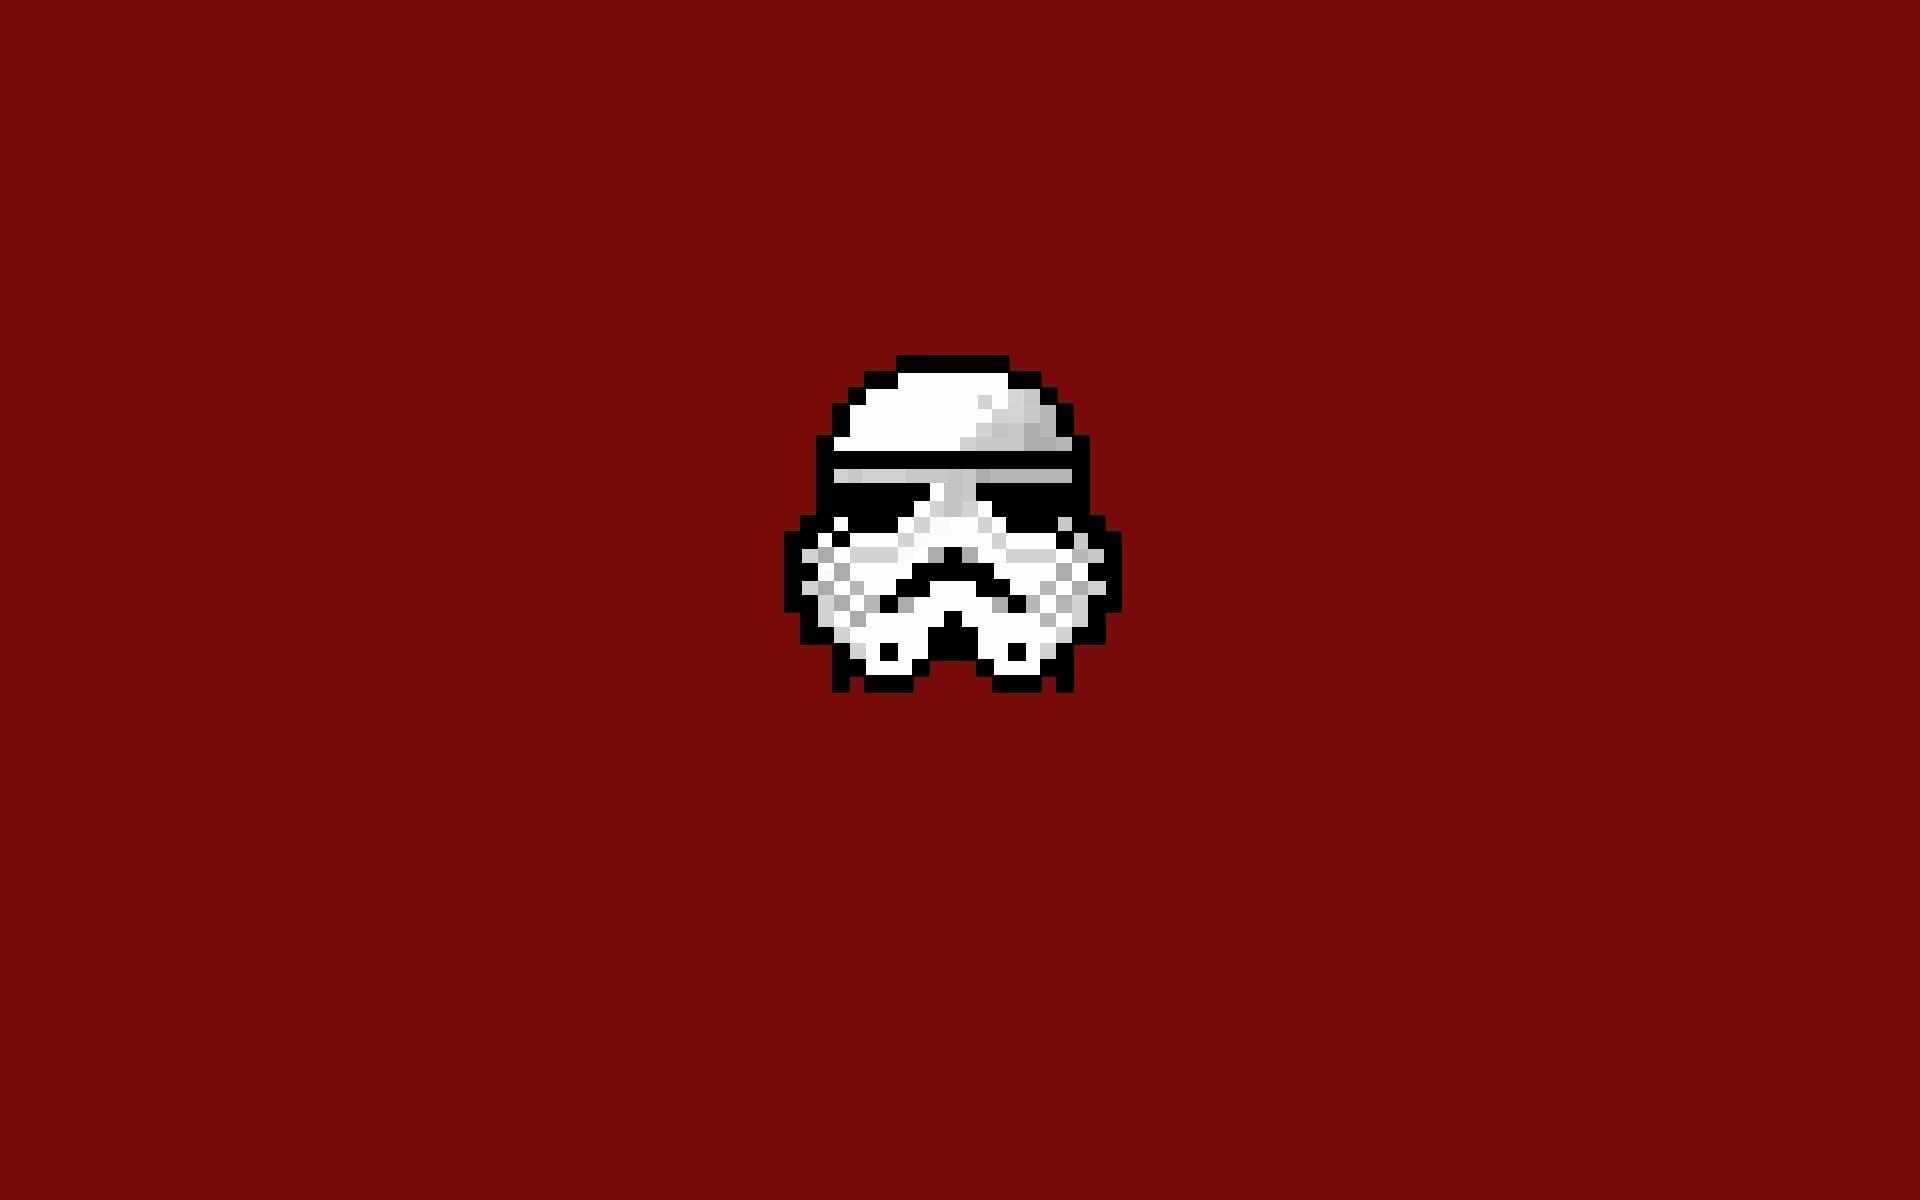 8-Bit Logo - Wallpaper : illustration, Star Wars, pixel art, minimalism, text ...